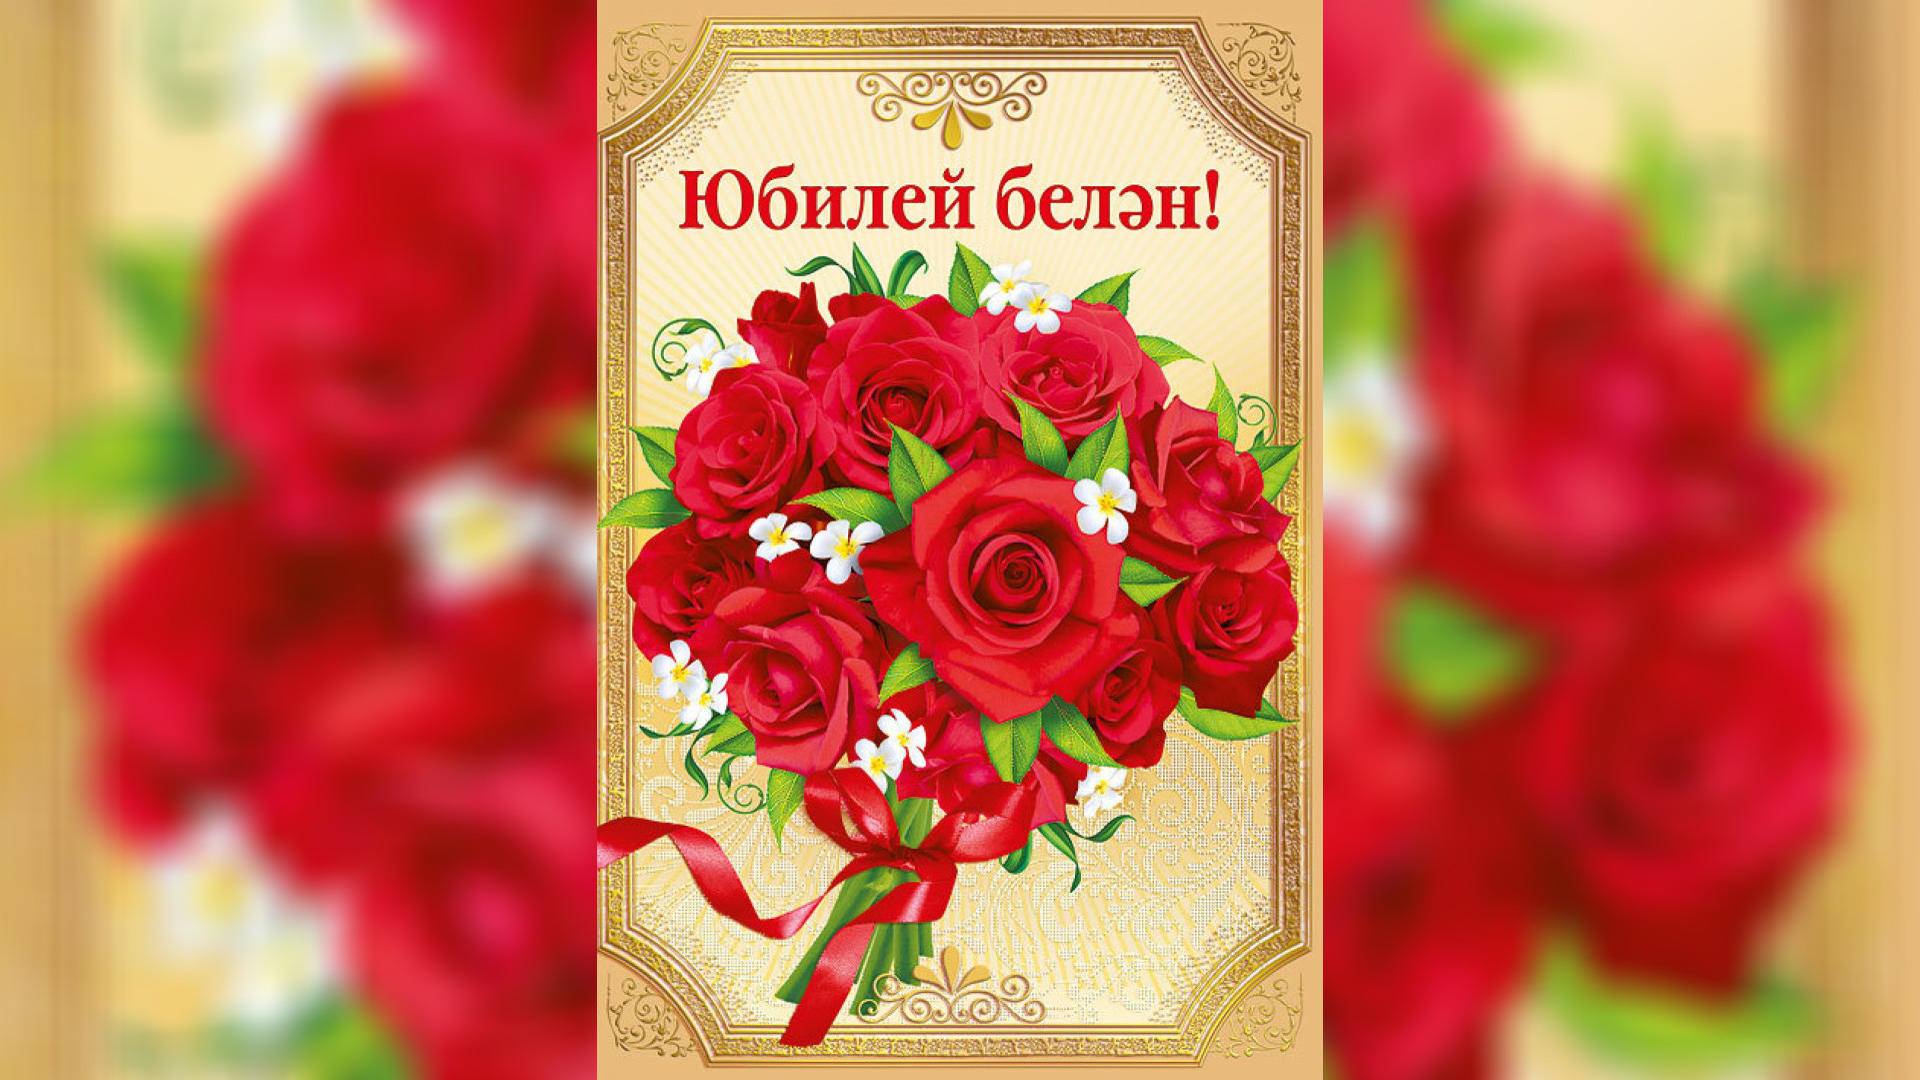 Поздравление на казахском языке красивое. Открытка с юбилеем. Открытки с днём рождения на татарском. Казахские открытки с днем рождения. Открытка с юбилеем на казахском.